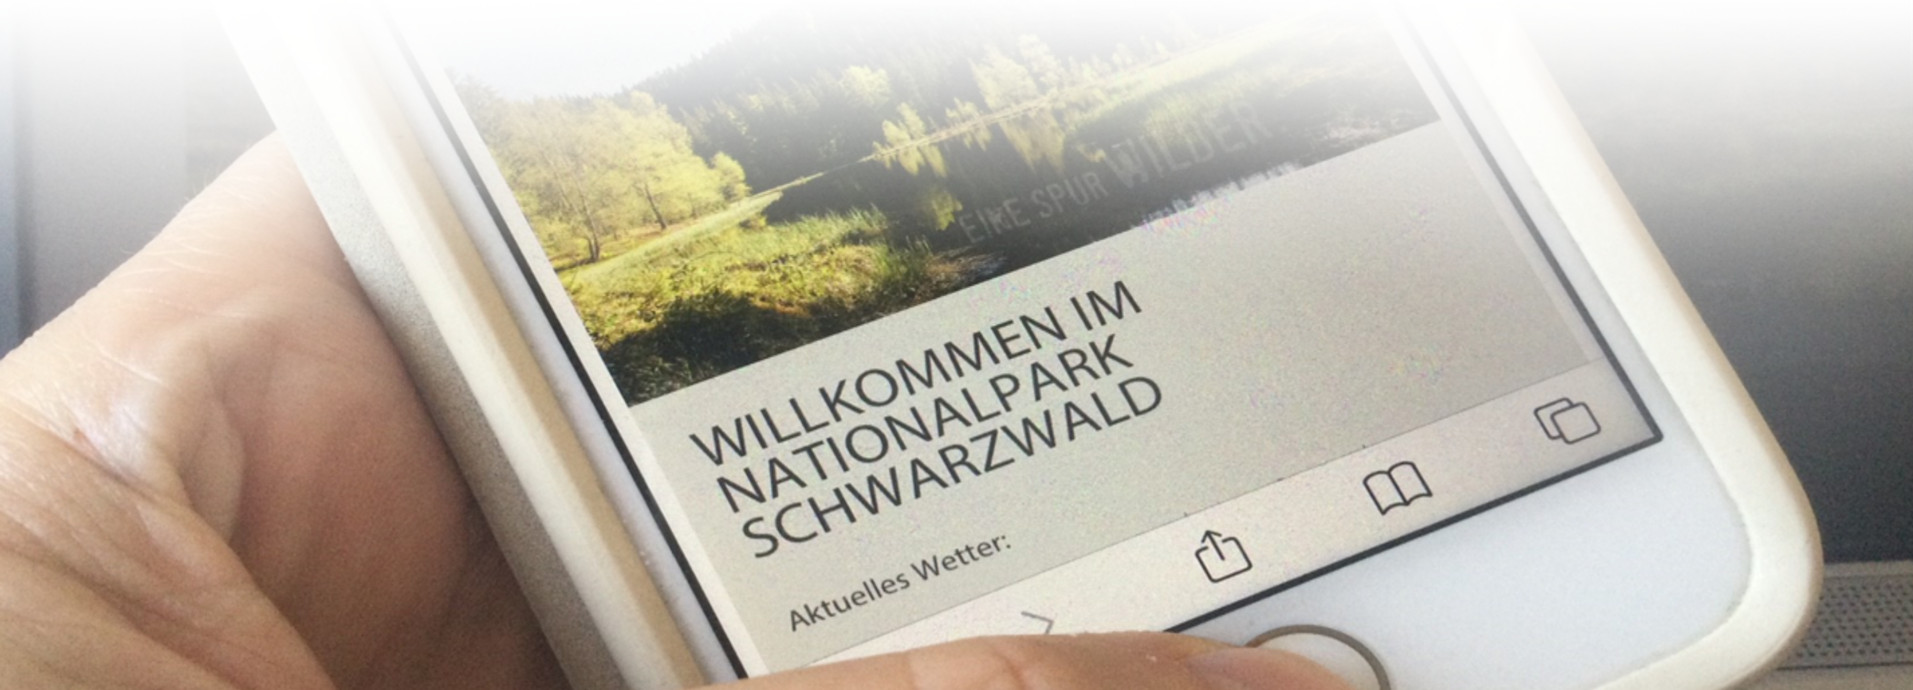 #Naturvermittlung ©Ulrike Schweiger Nationalpark Schwarzwald